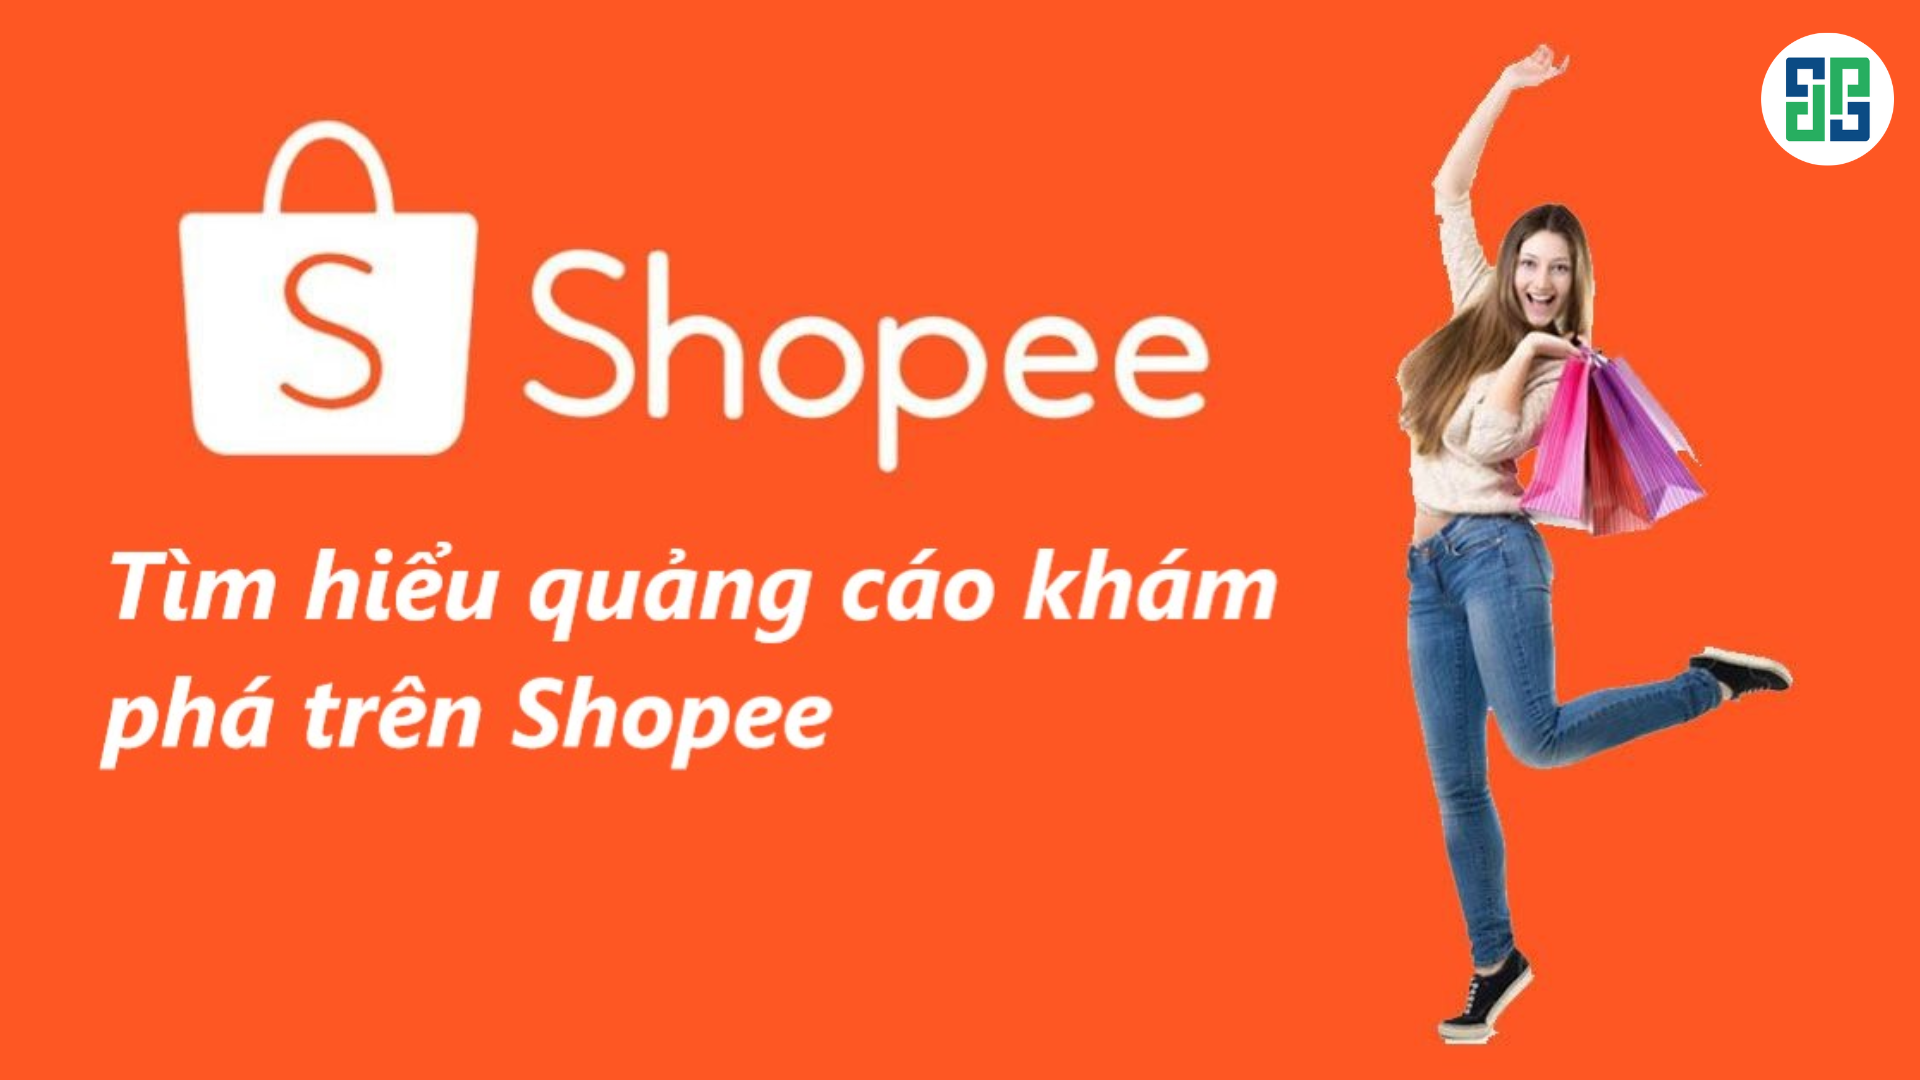 Tìm hiểu về chạy quảng cáo tìm kiếm trên Shopee hiệu quả 